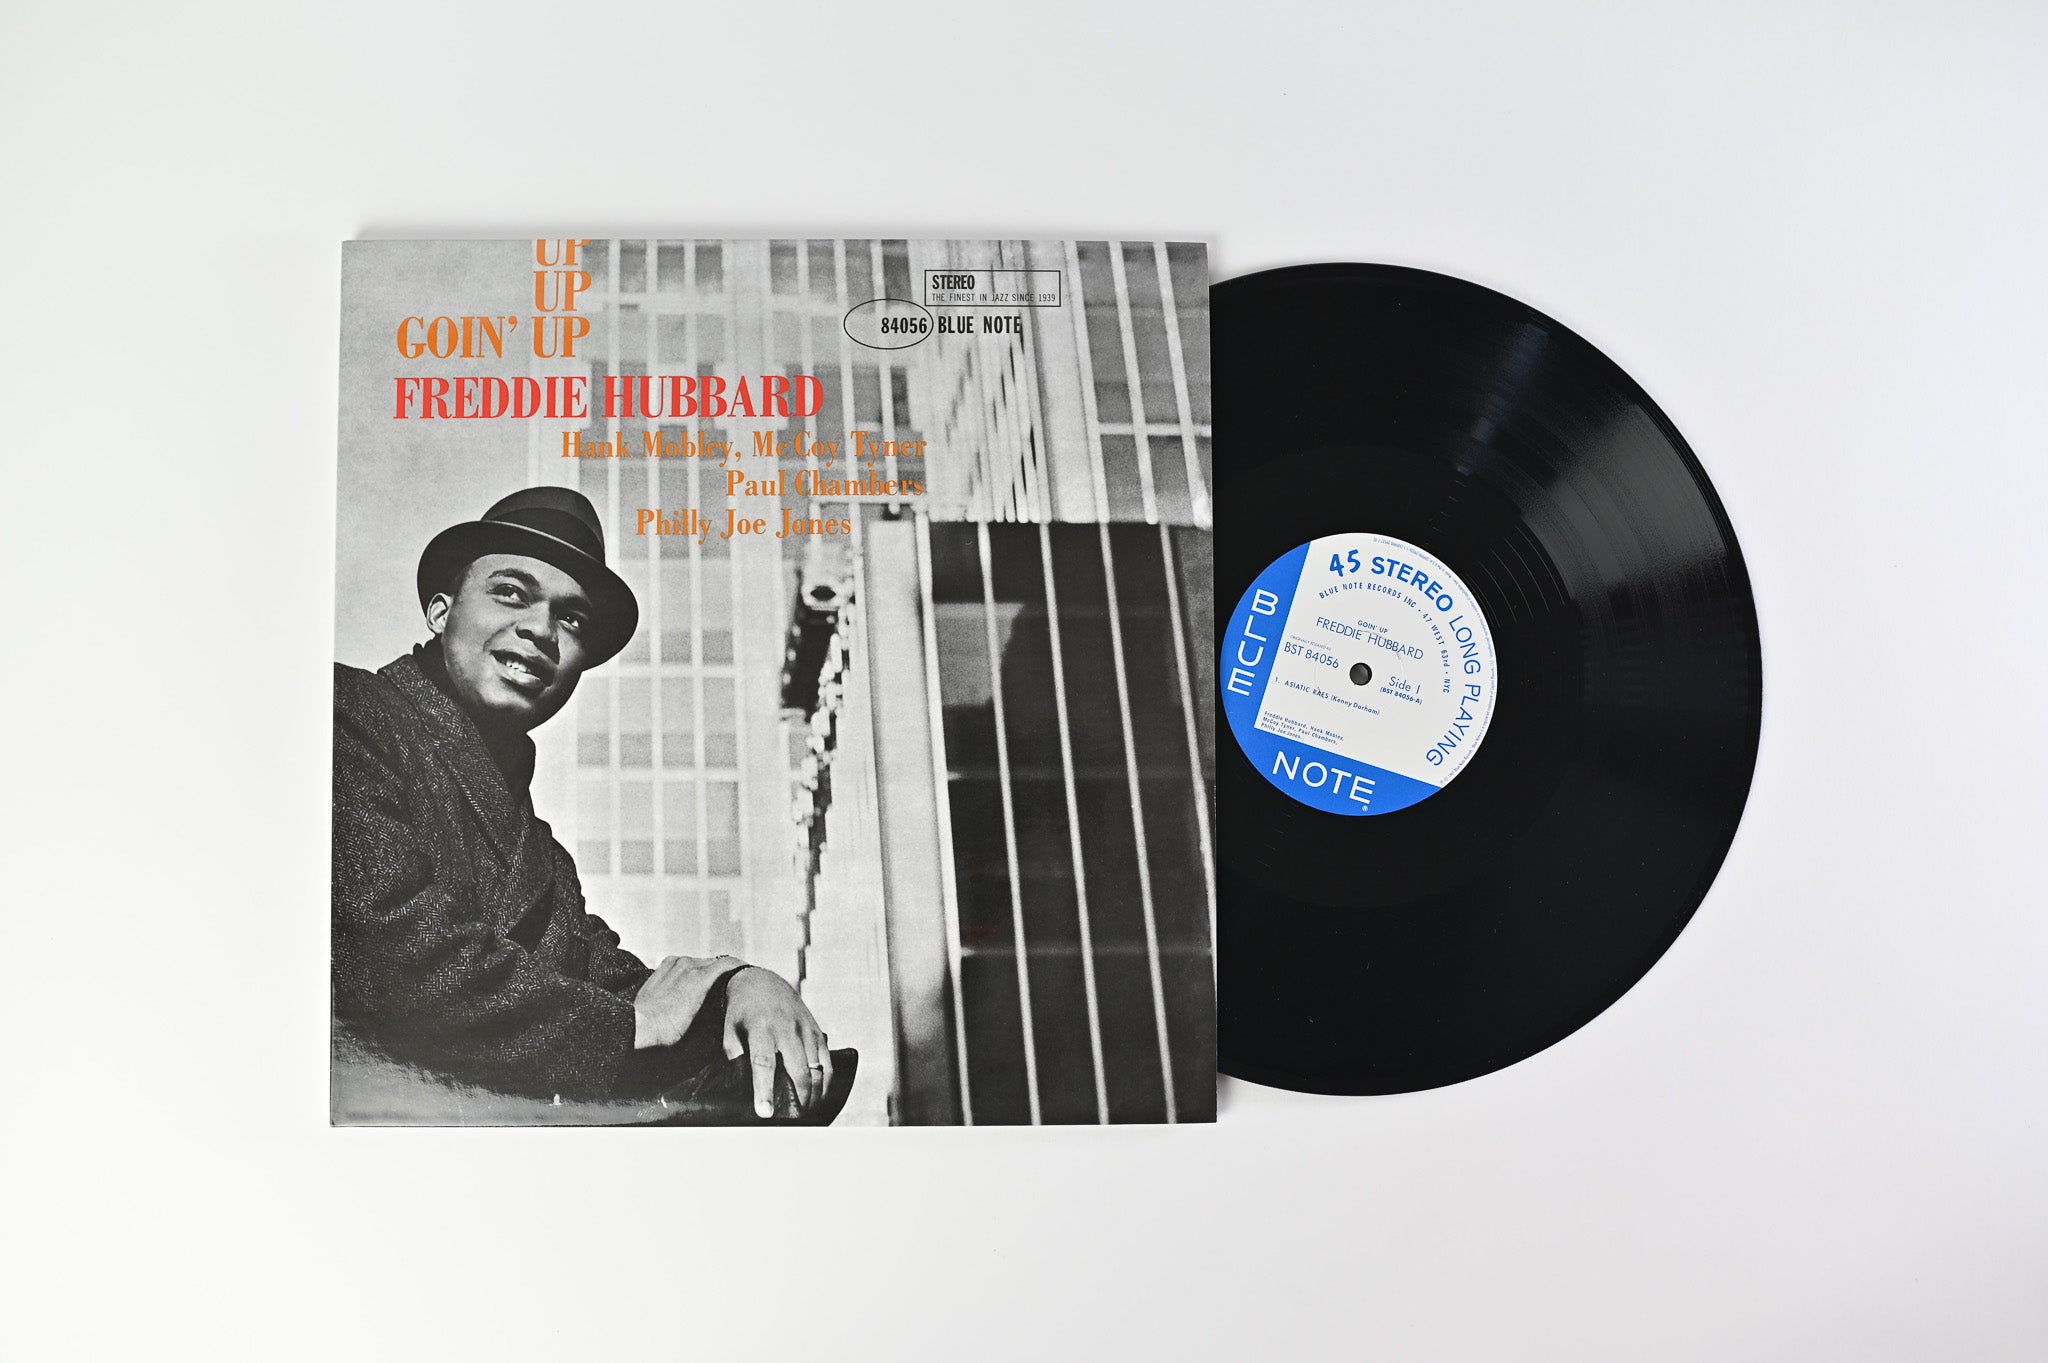 Freddie Hubbard - Goin' Up on Blue Note Music Matters Ltd Reissue 45 RPM